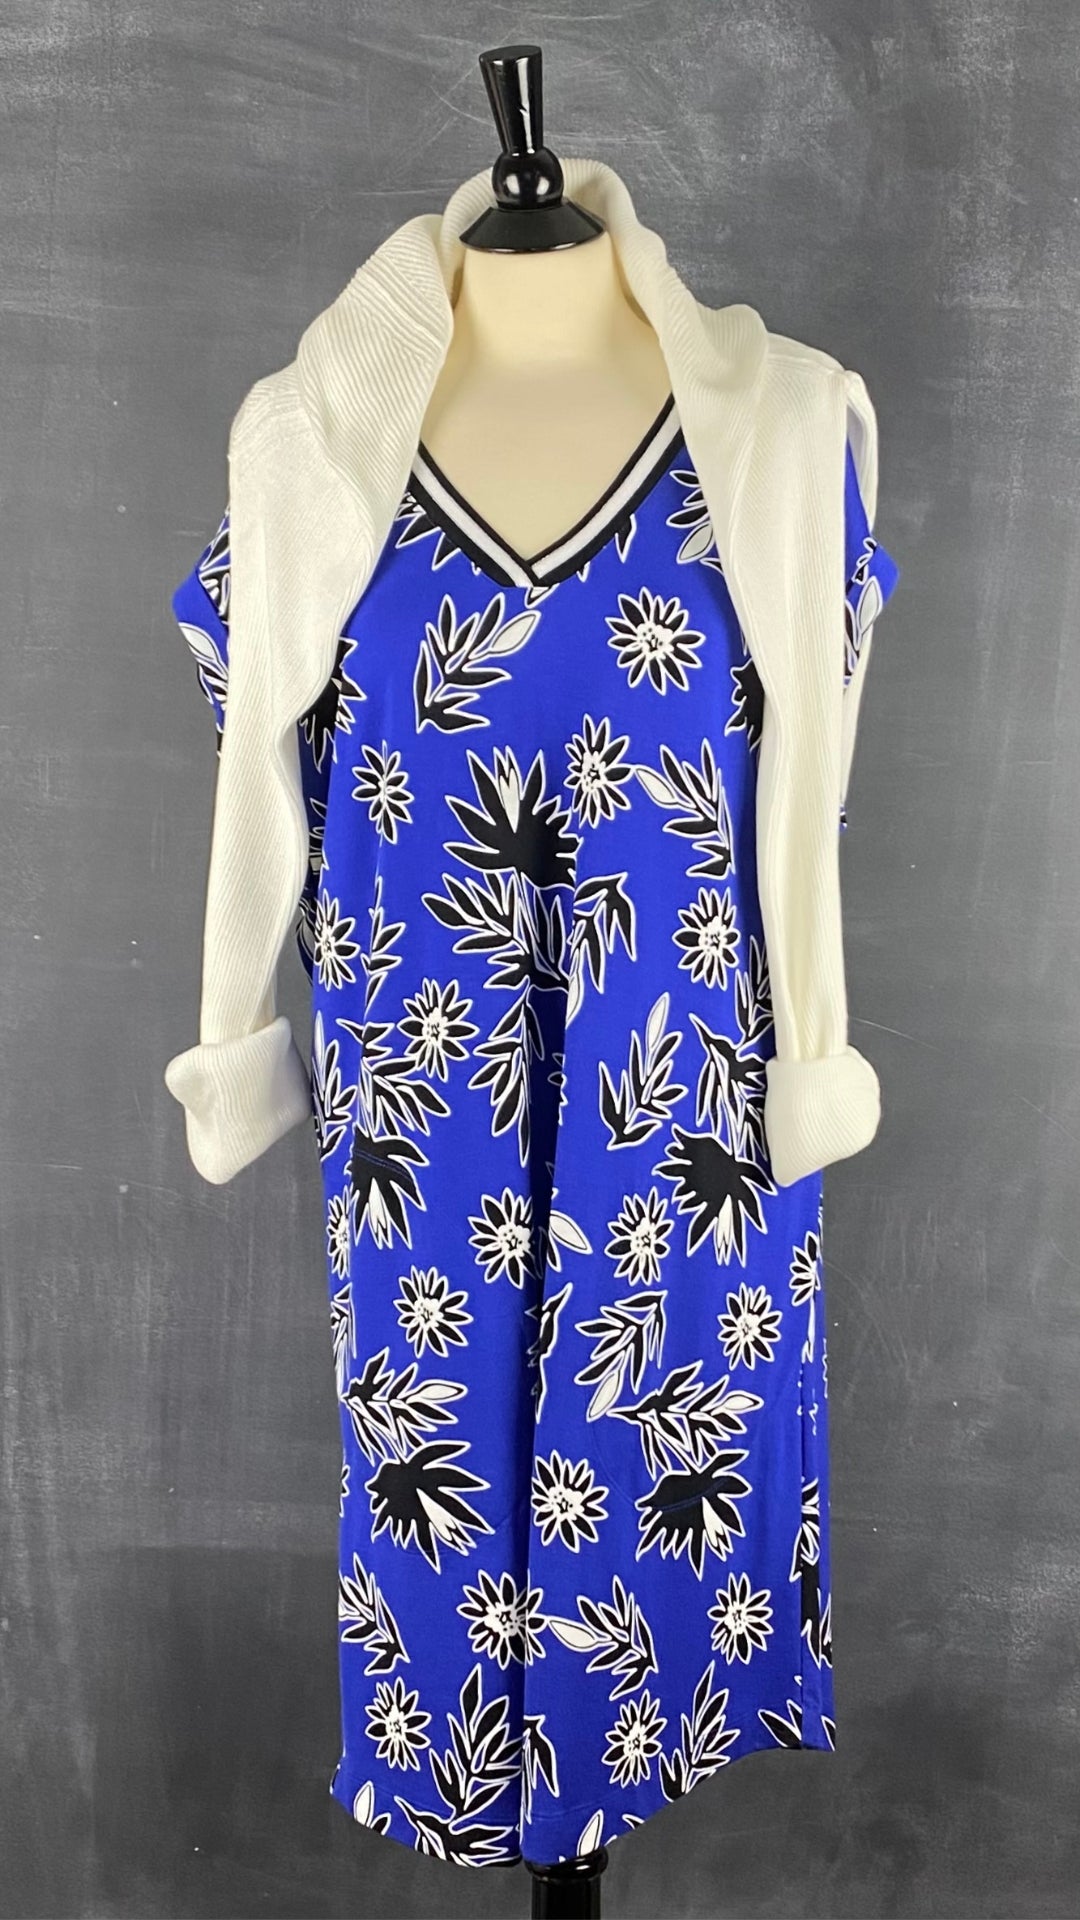 Chandail manche raglan en tricot de coton Matinique, taille xl. Vue de l'agencement avec la robe florale bleu royal.